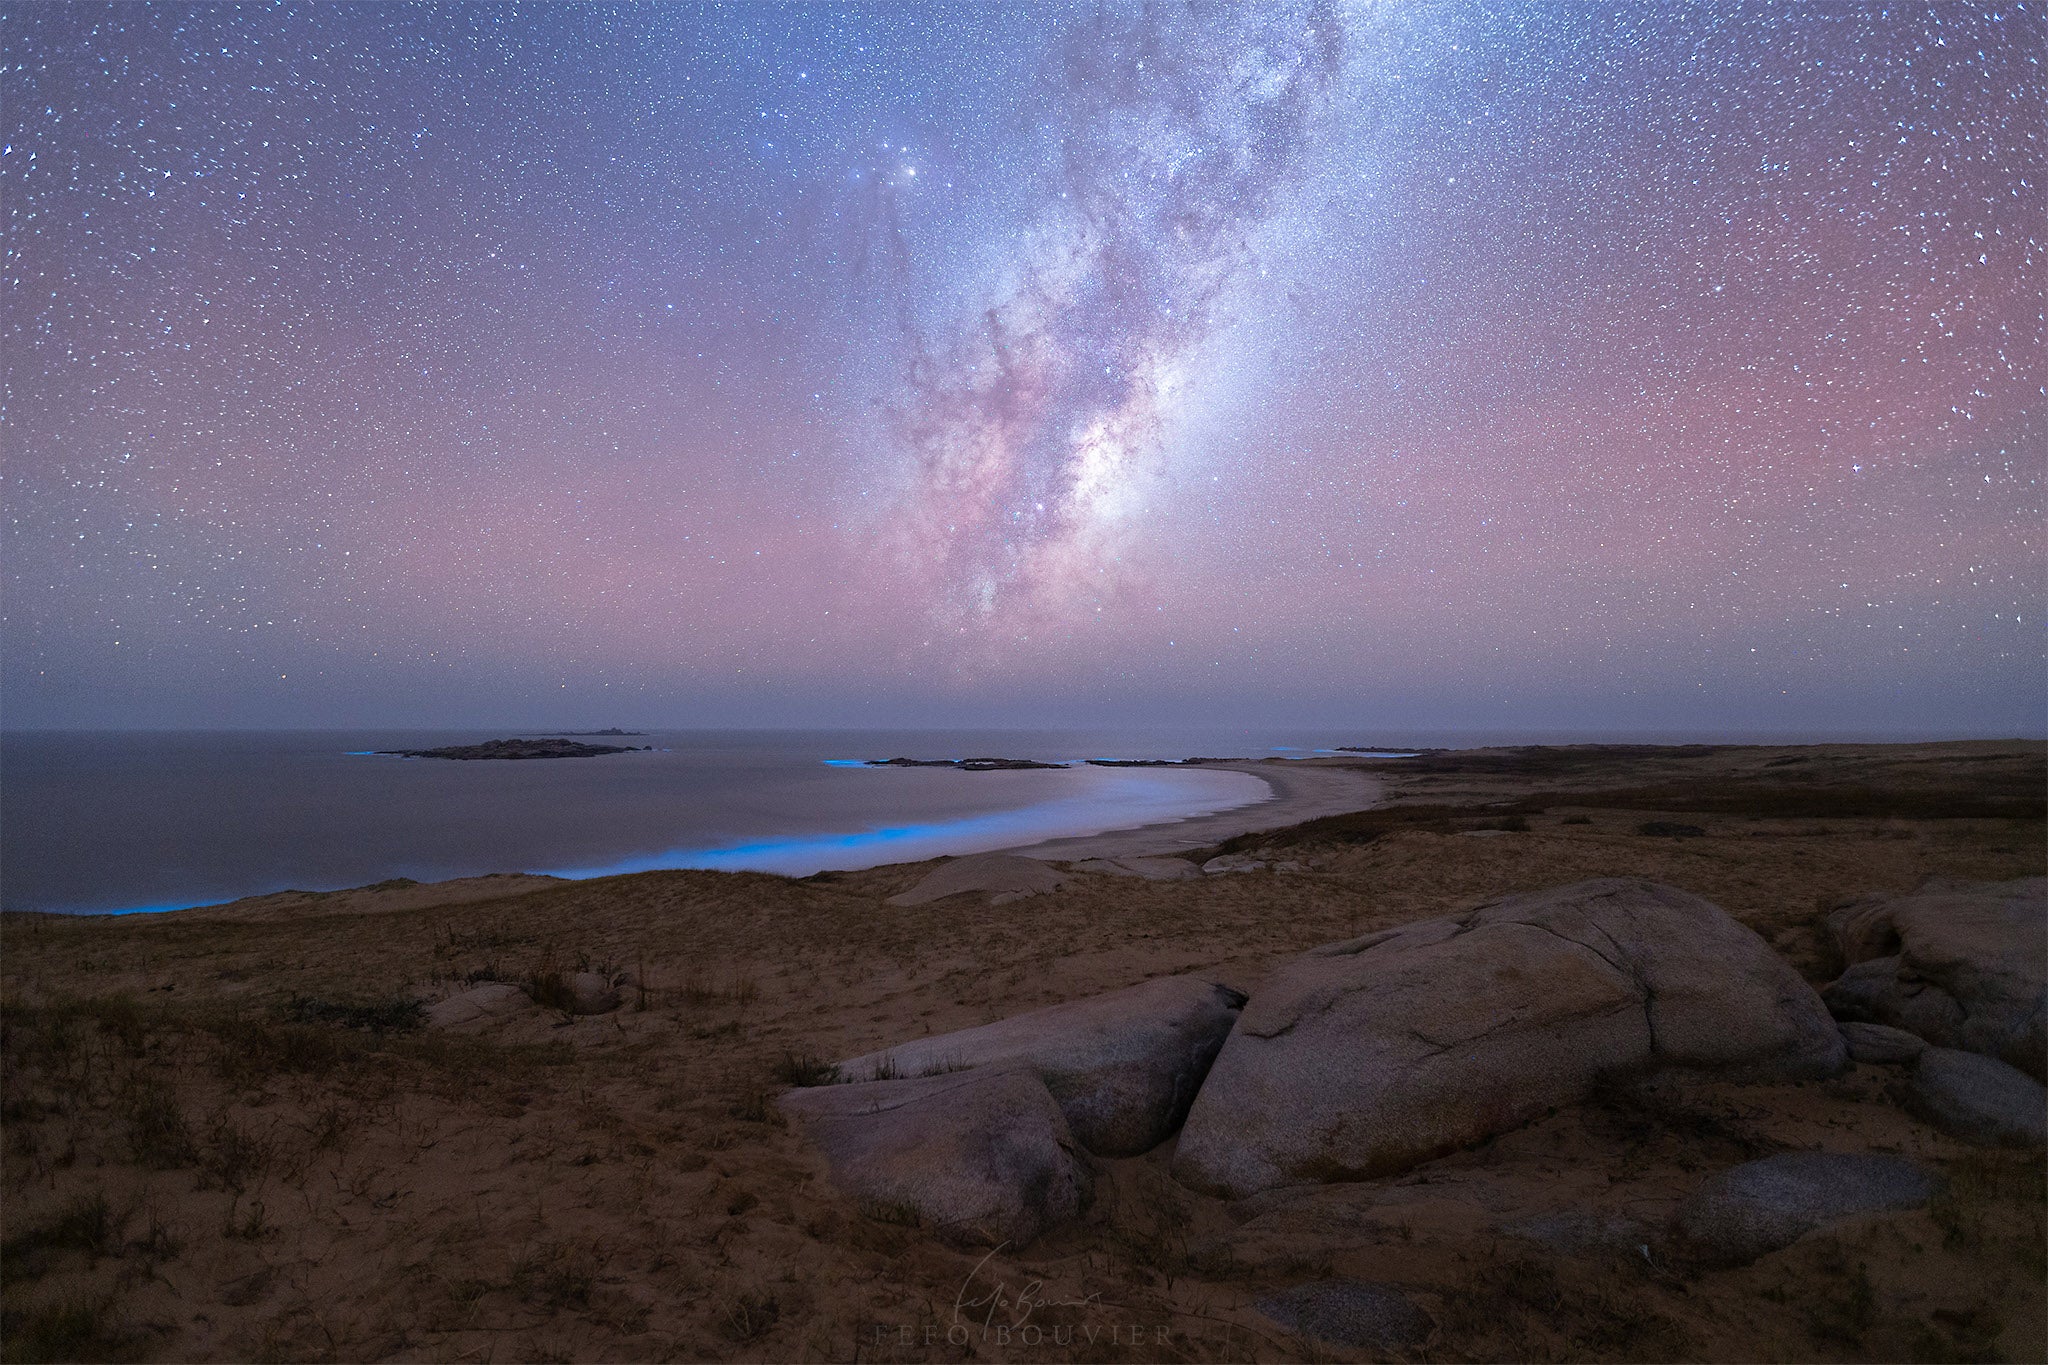 Bioluminiscencia y la Vía Láctea en la costa del Cerro de la Buena Vista, Rocha, Uruguay